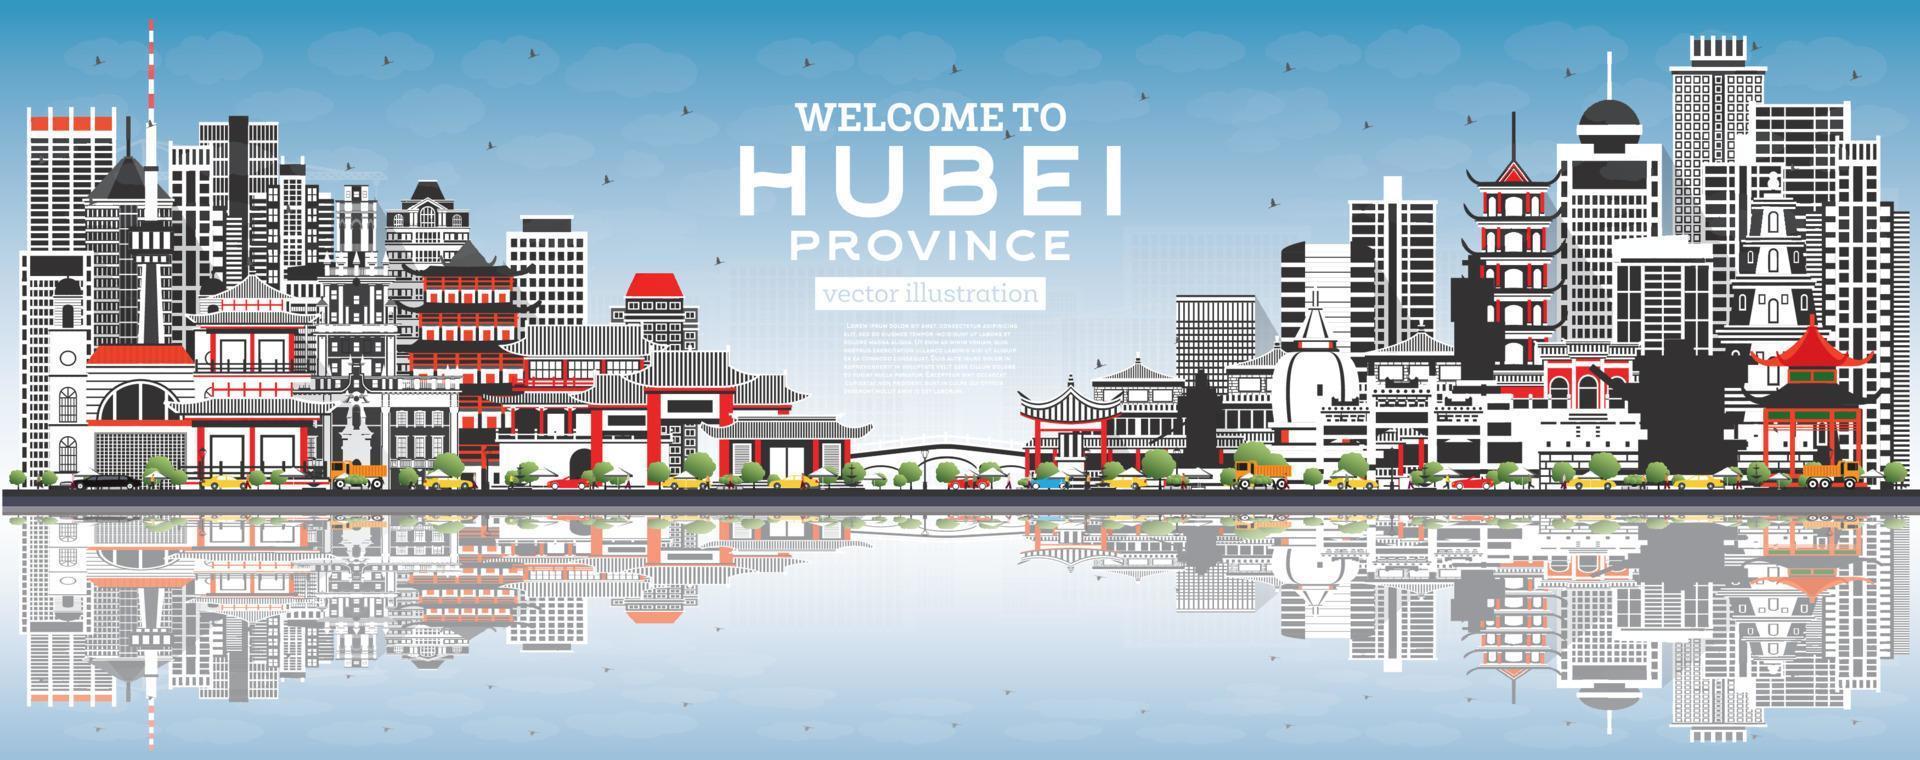 Välkommen till hubei provins i Kina. stad horisont med grå byggnader och blå himmel. vektor